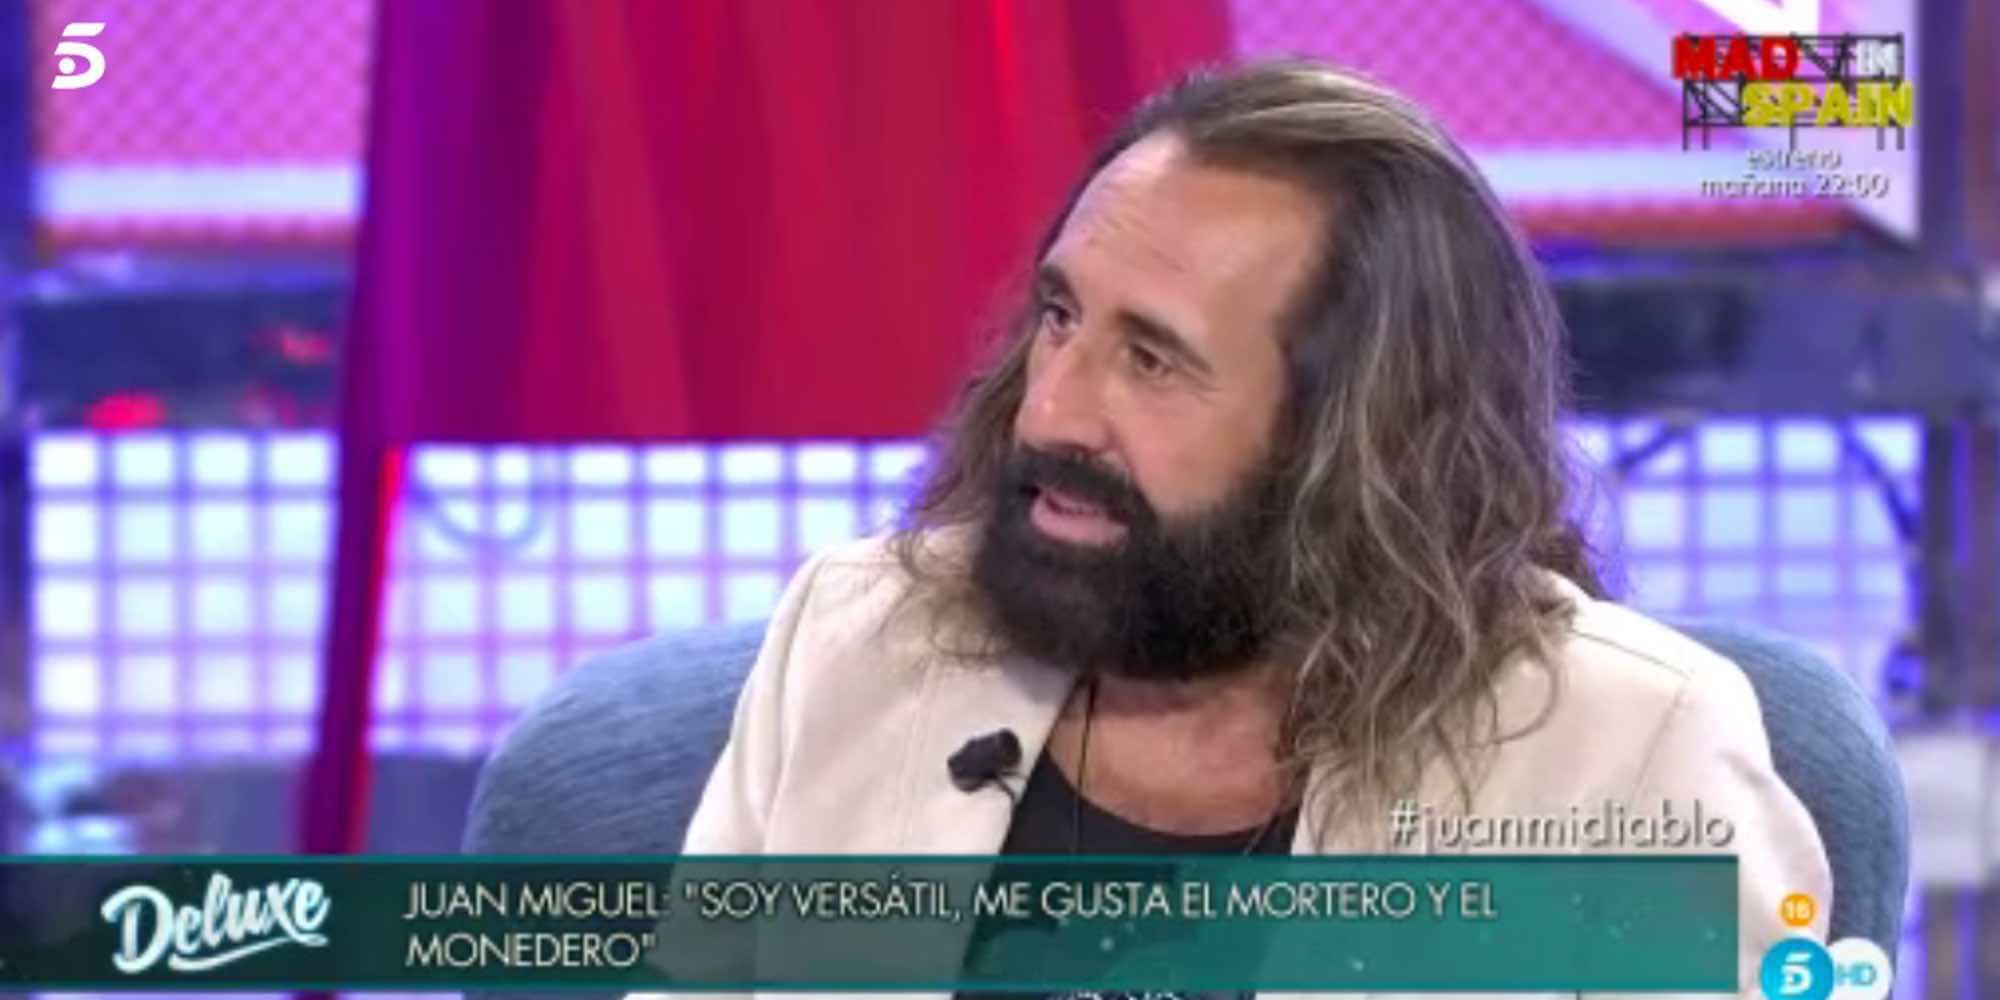 Las confesiones sexuales de Juan Miguel: "Soy versátil: me gusta el mortero y el monedero"